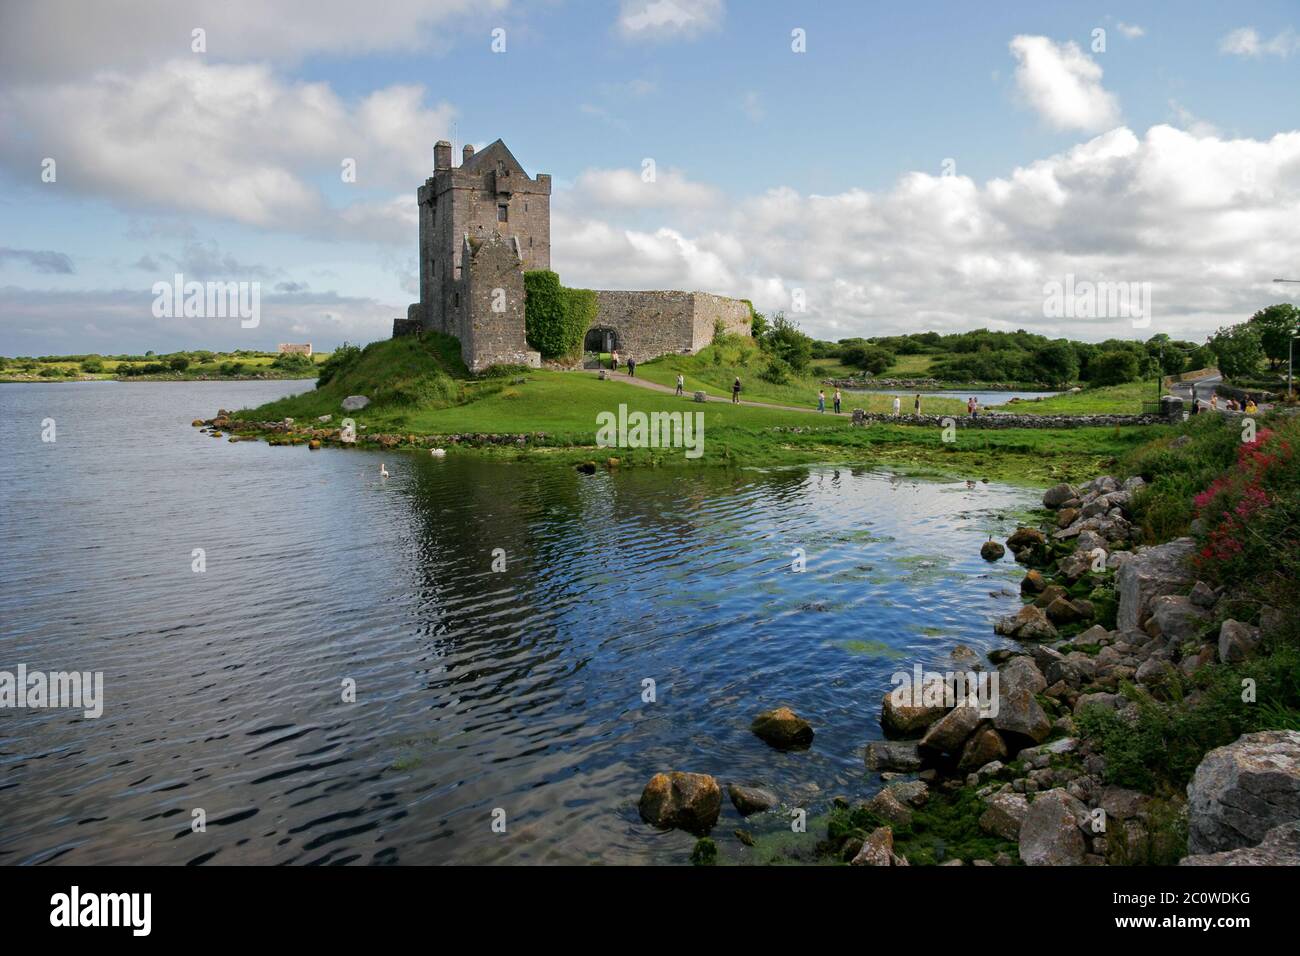 bay ireland irish castle landmark chateau shine shines bright lucent light Stock Photo